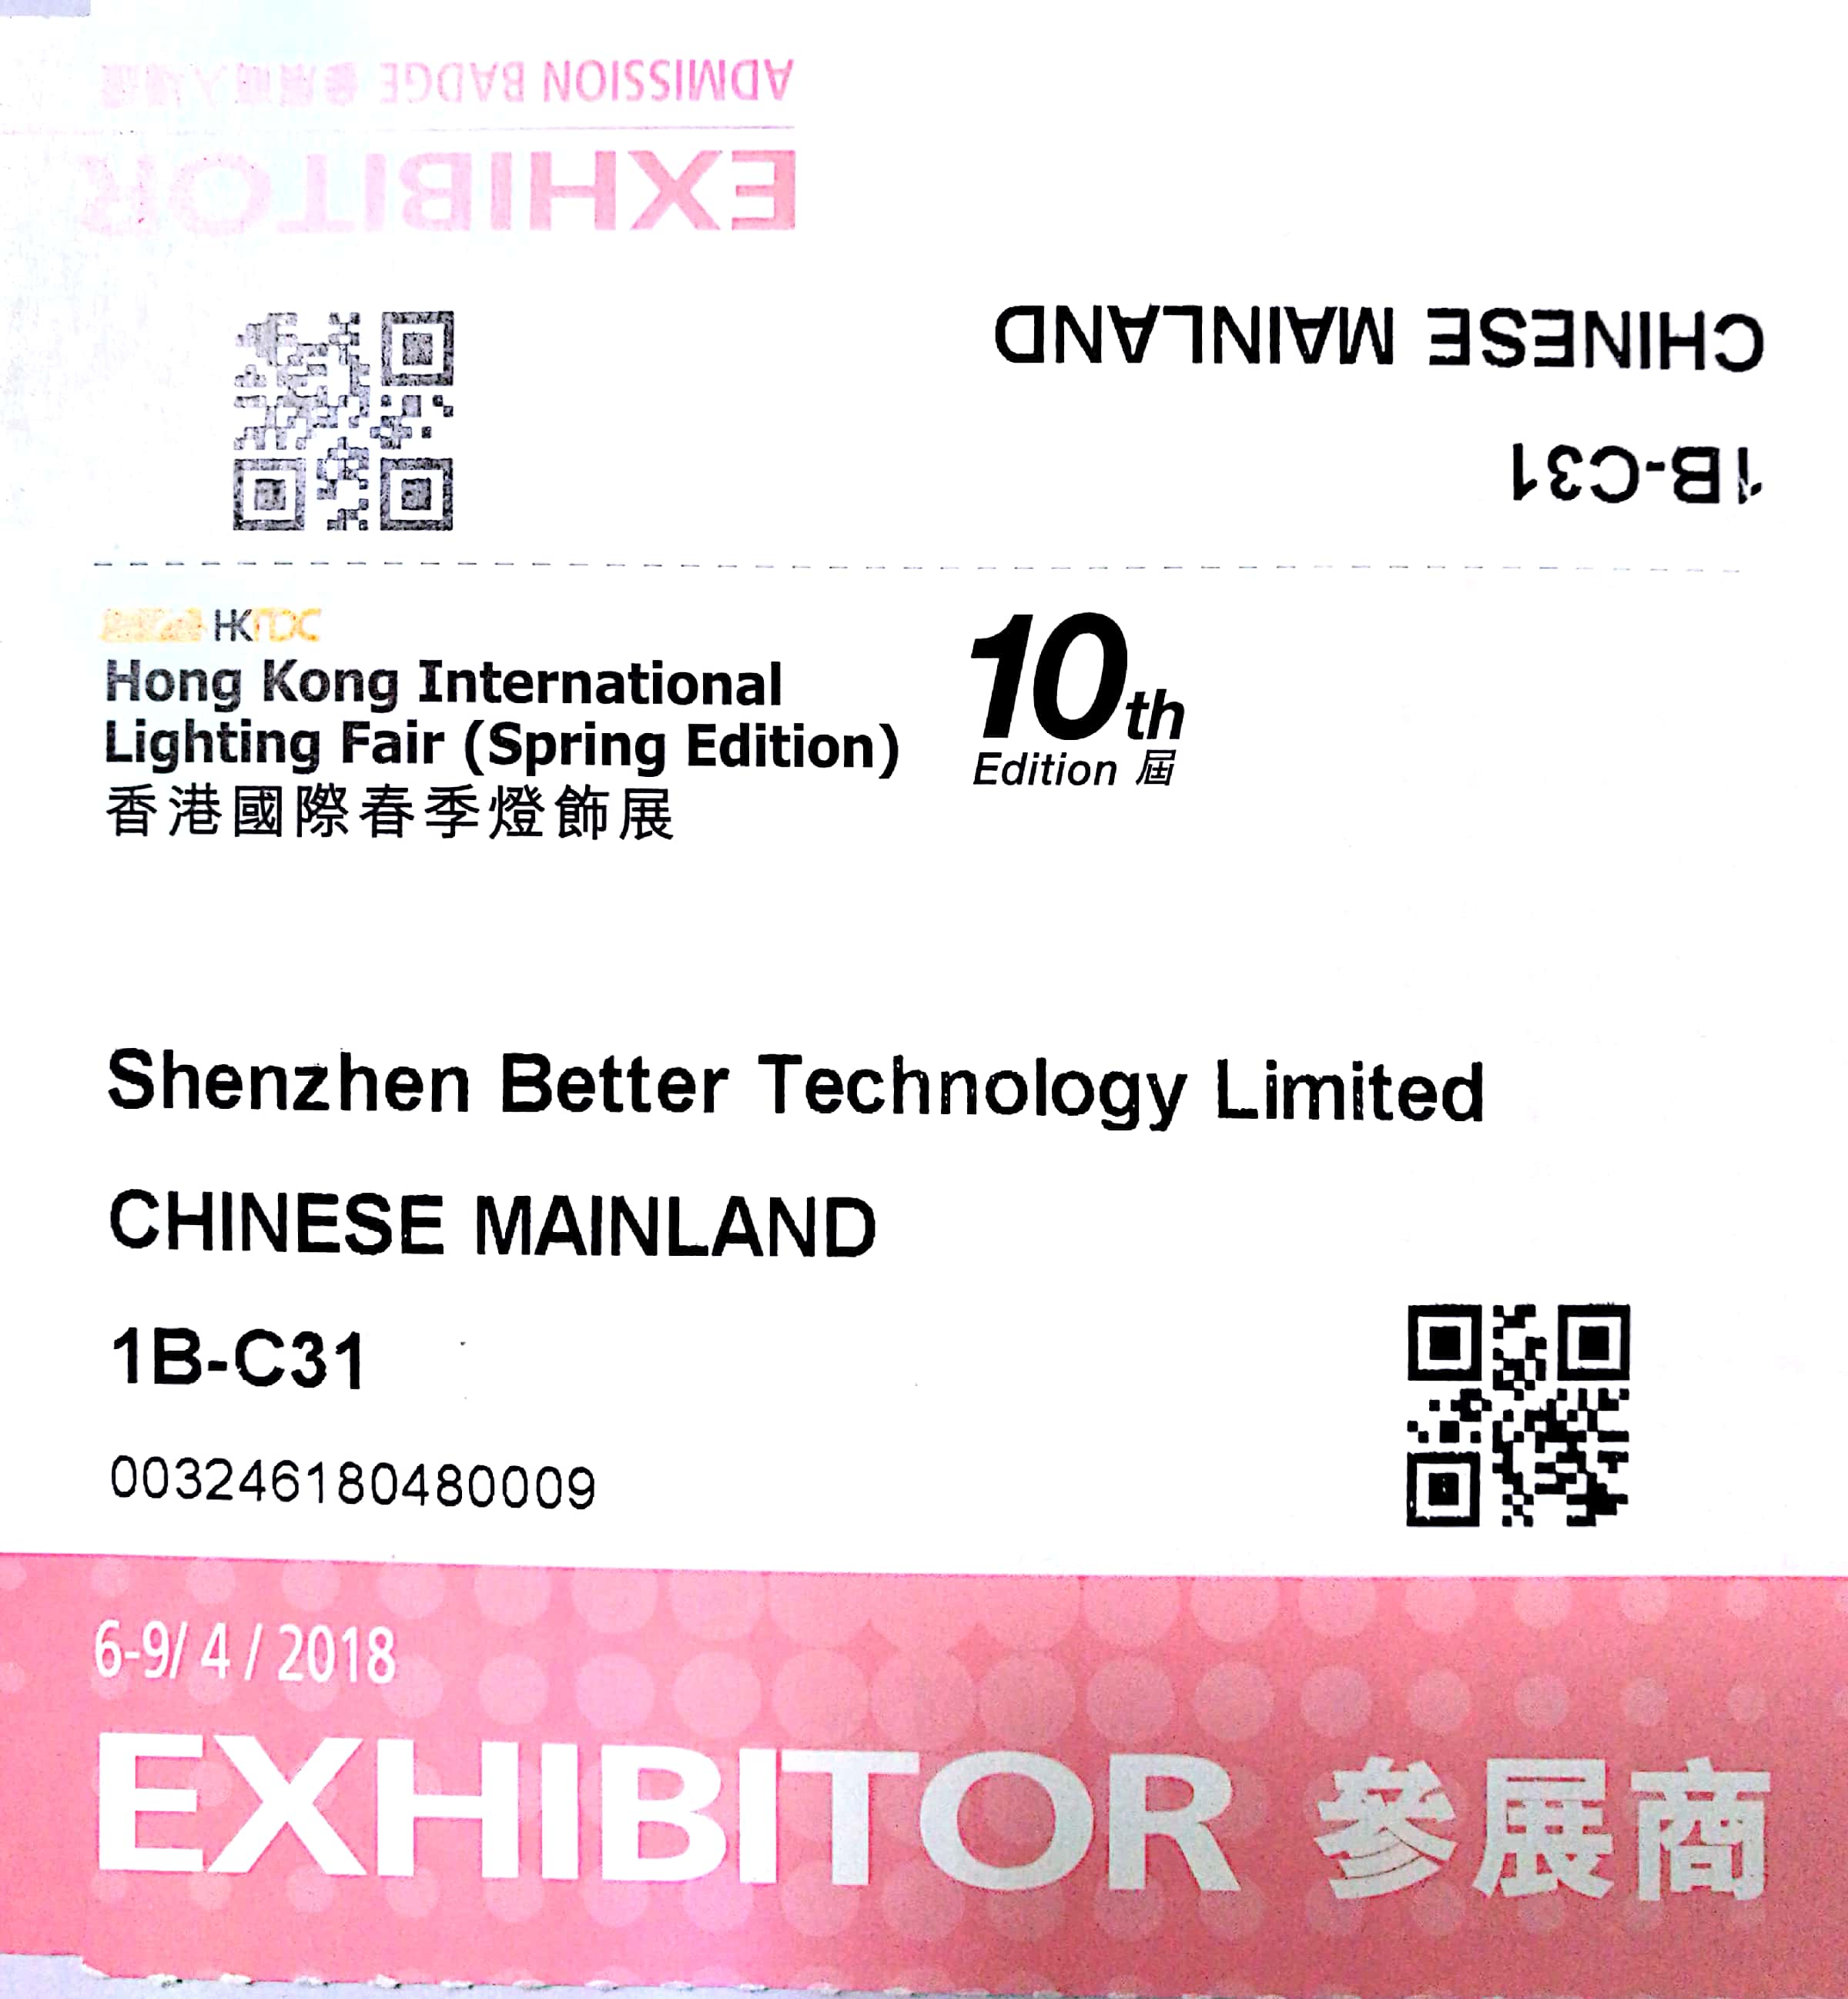 BET will attend 10th Edition Hong Kong international lighting fair